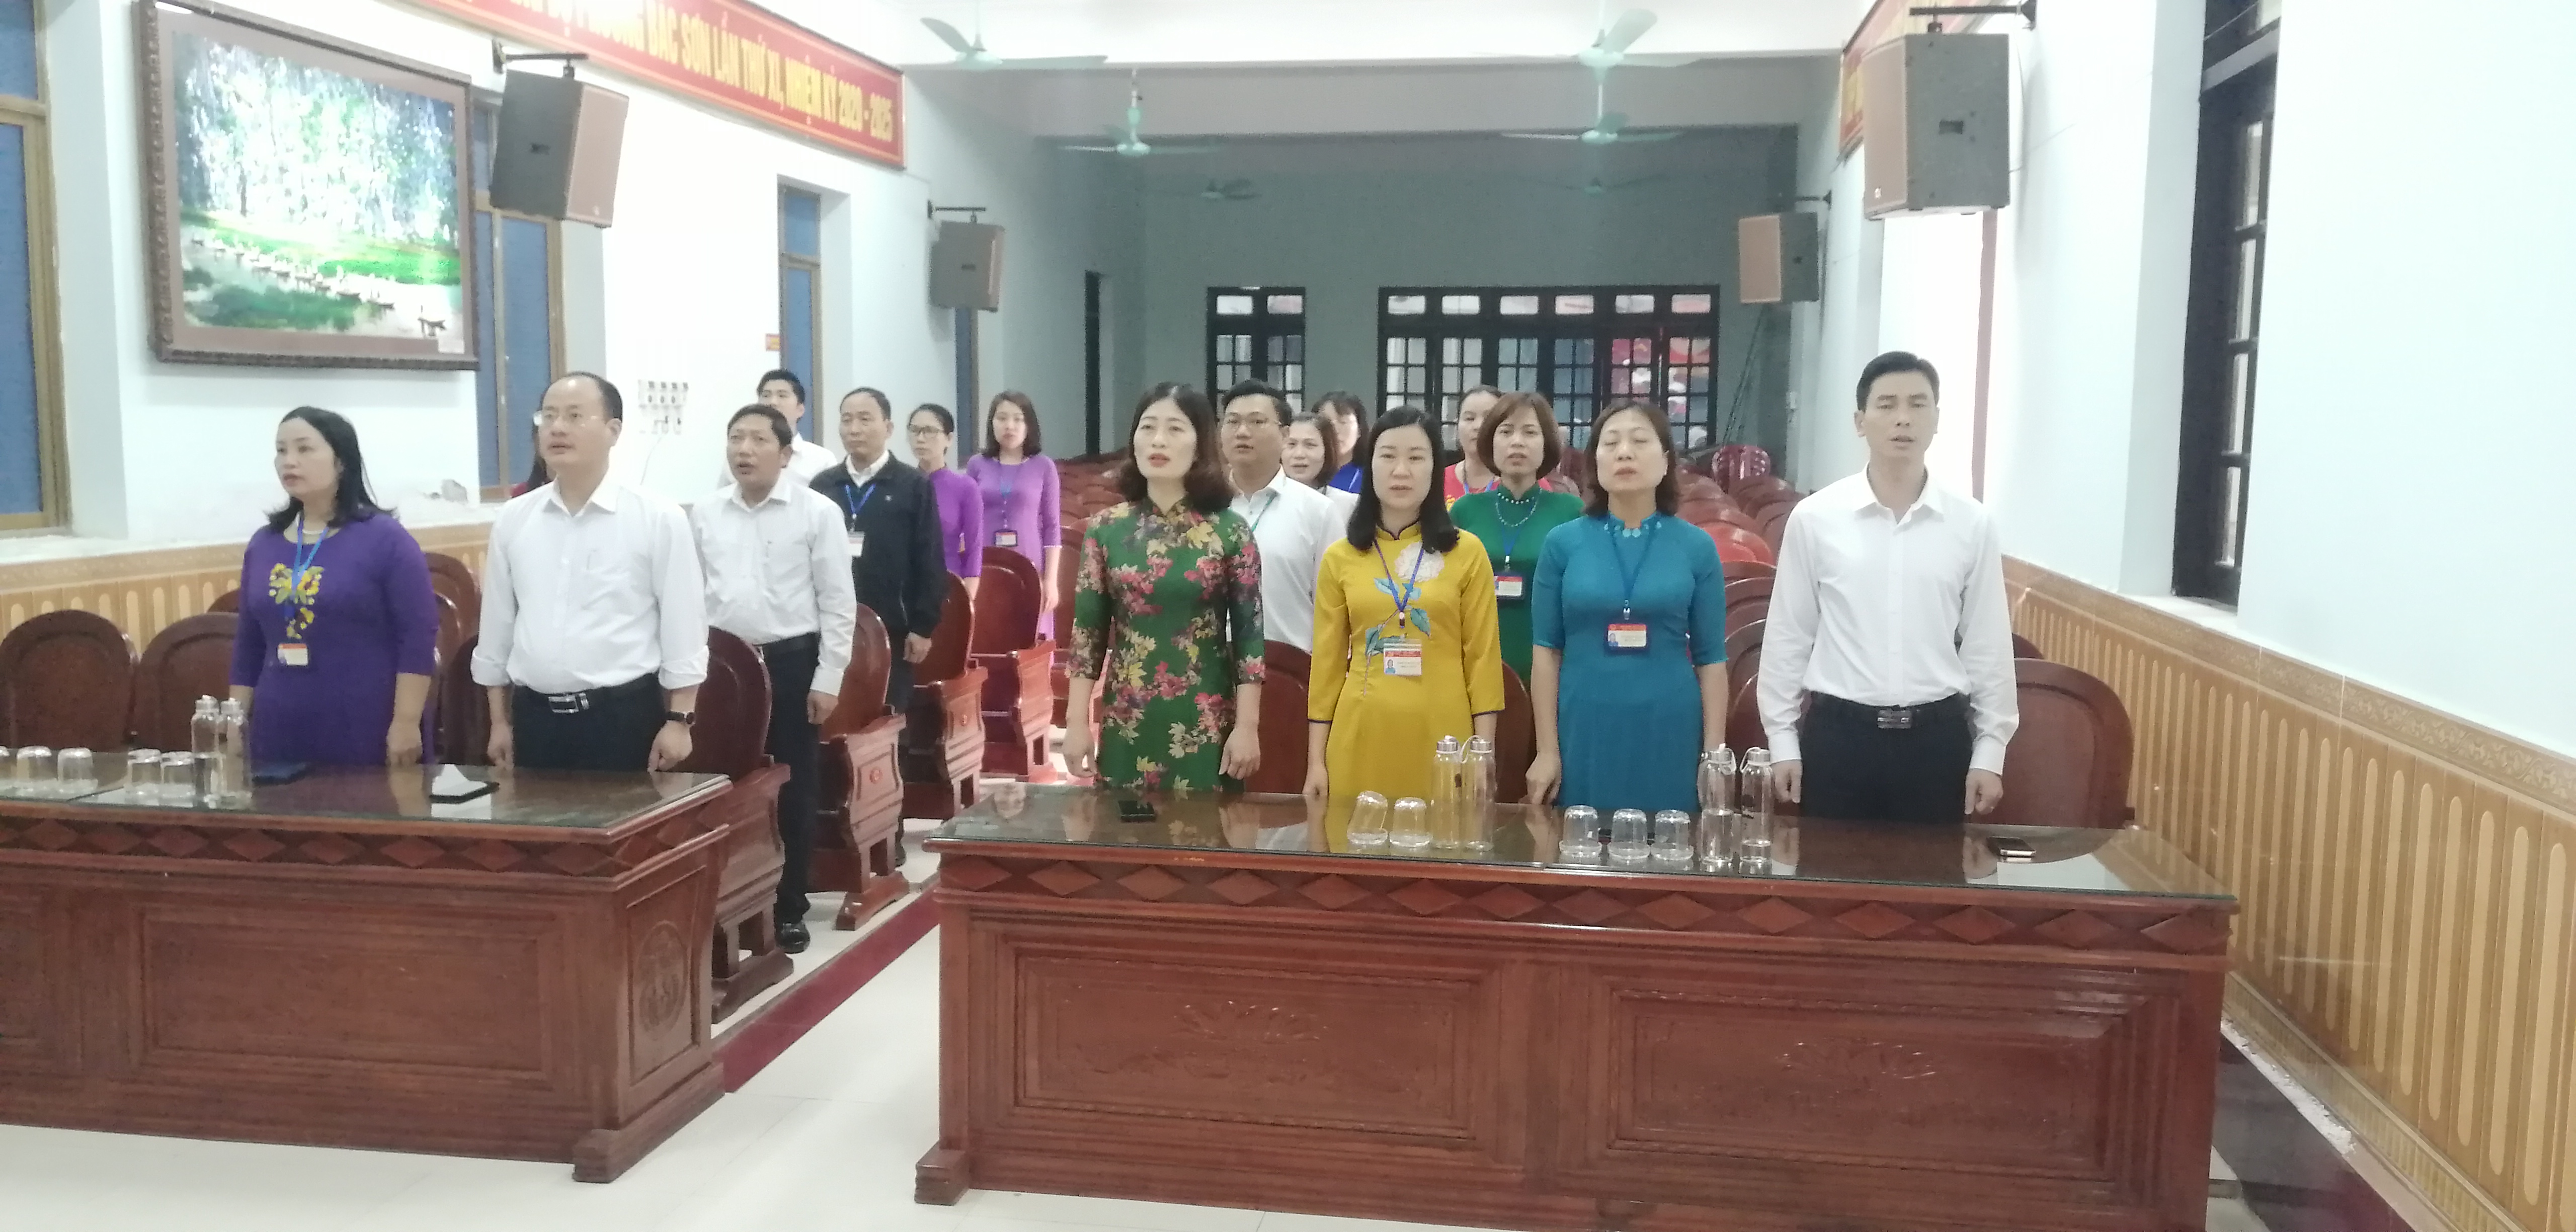 Đảng ủy, HĐND, UBND, UBMTTQVN phường Bắc Sơn tổ chức sinh hoạt chính trị dưới nghi thức chào cờ đầu tuần tháng 2, năm 2023